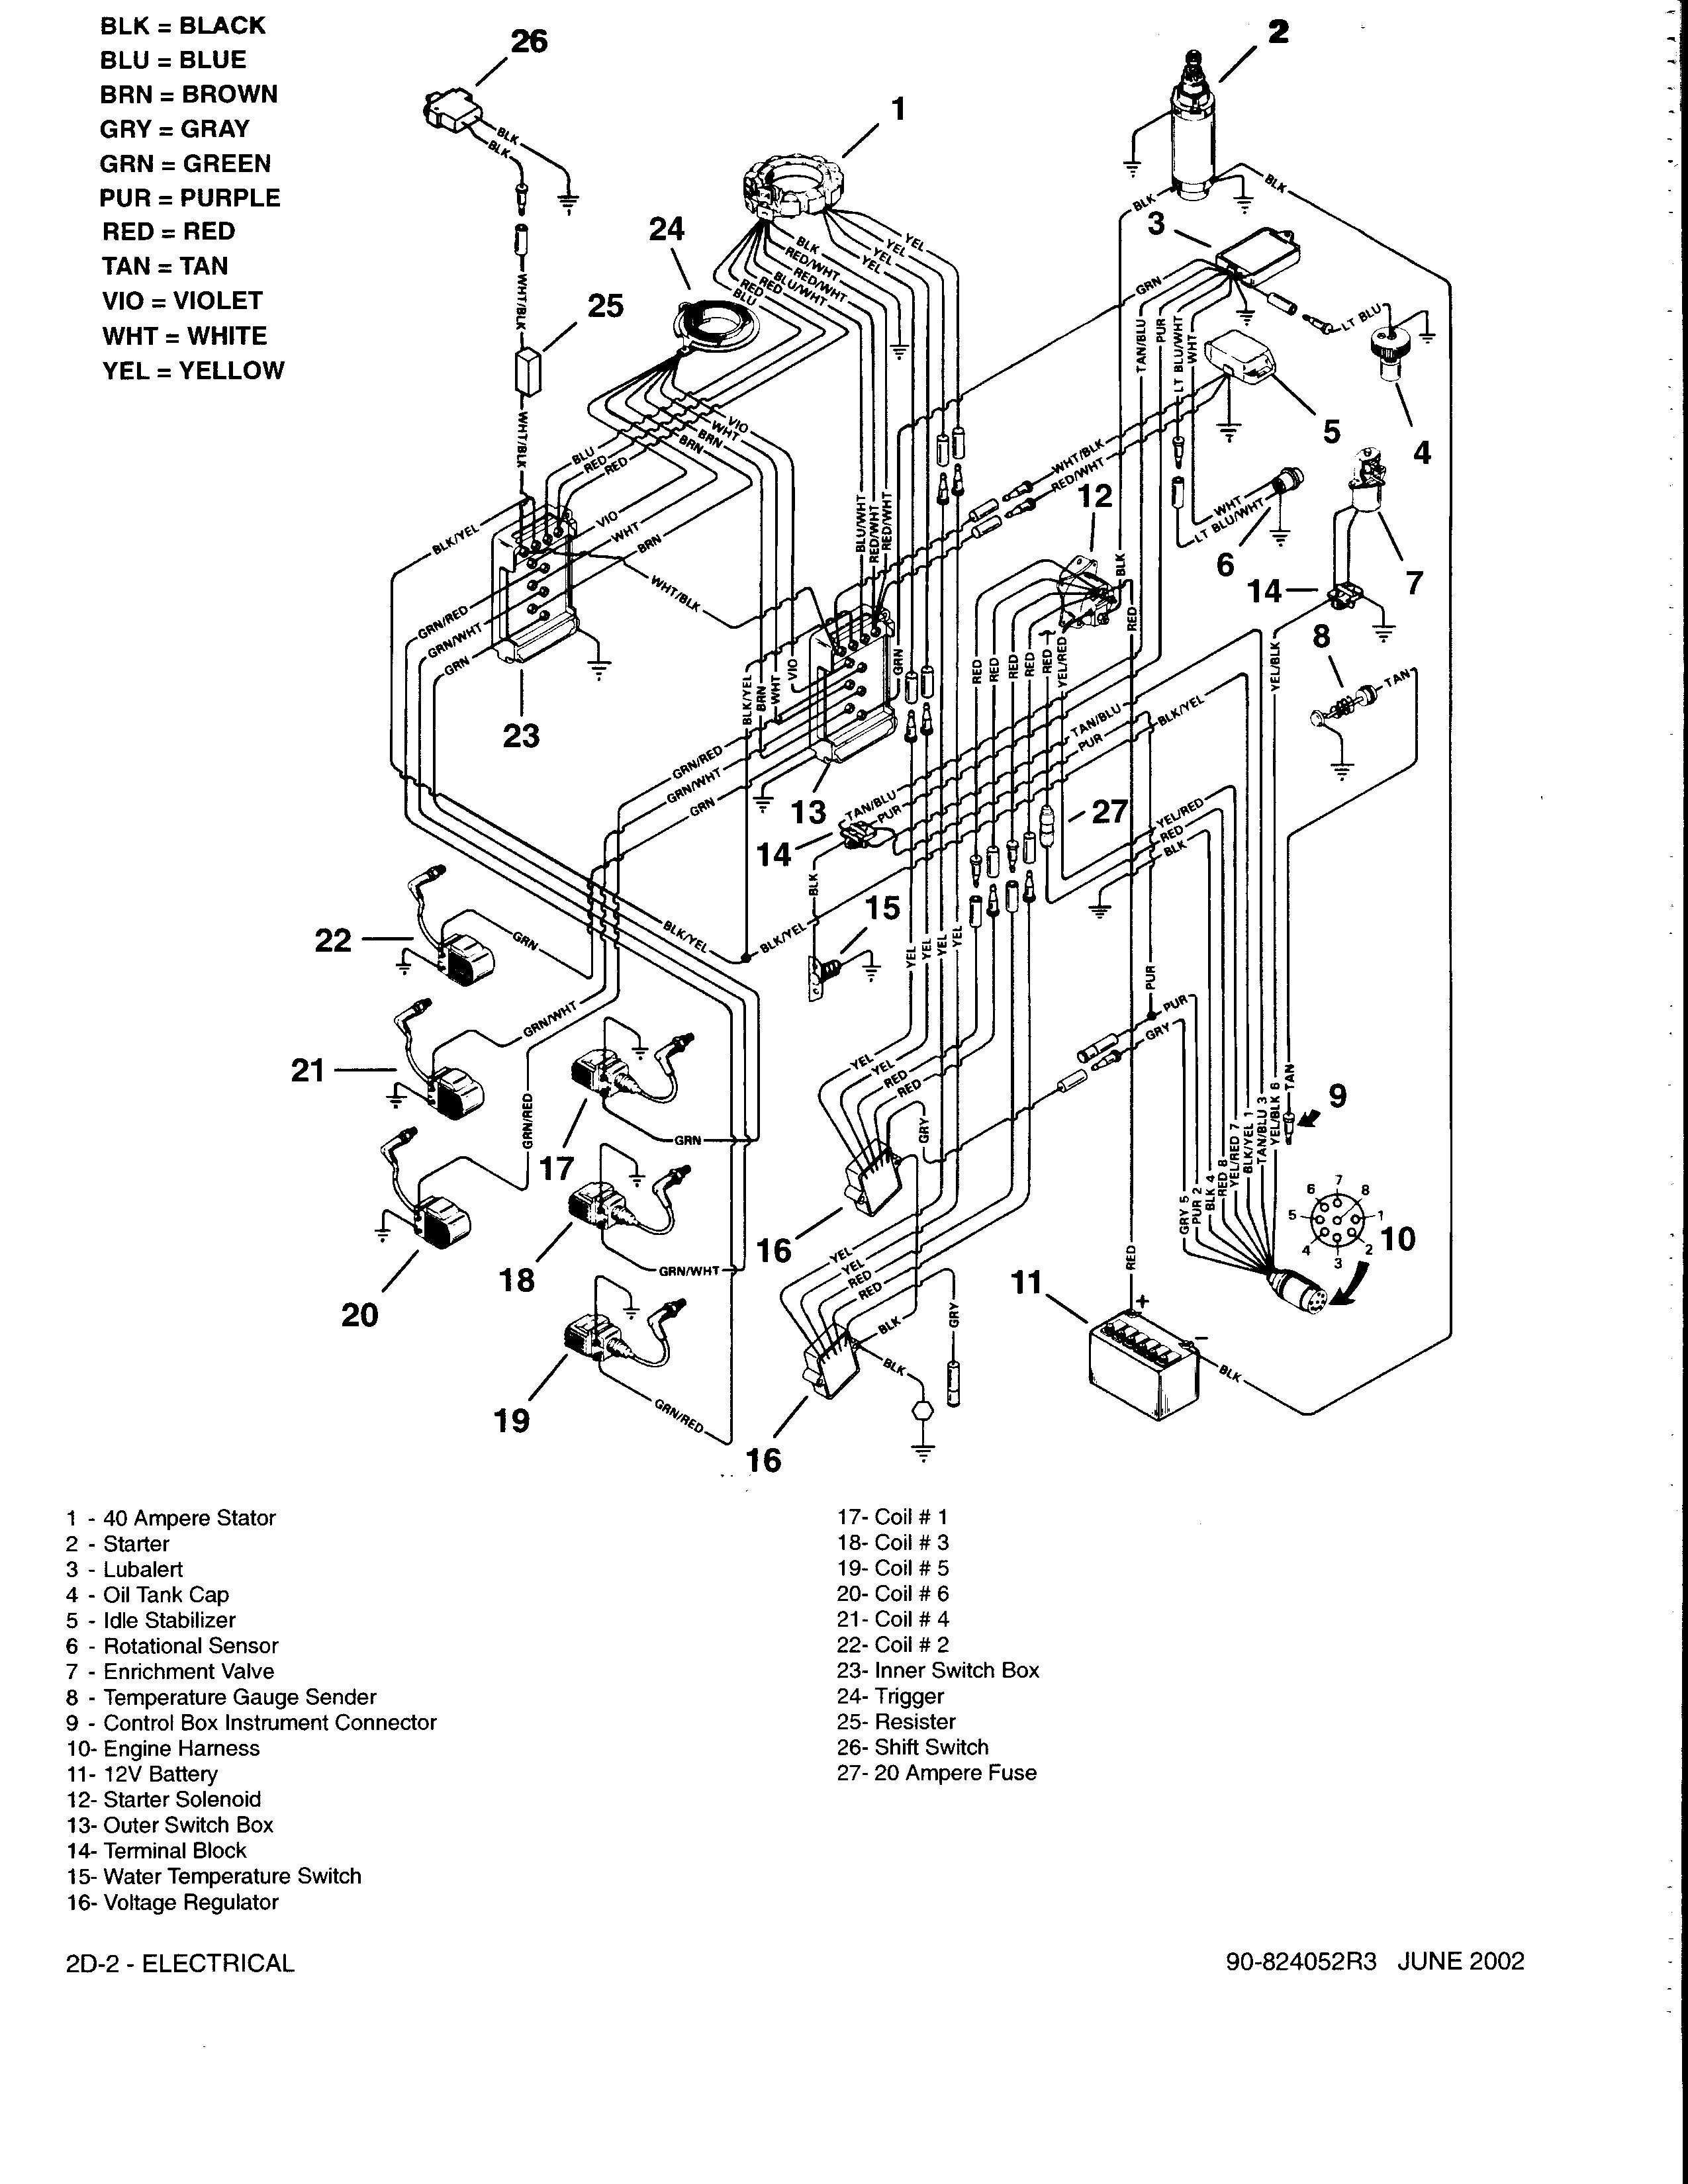 1973 Corvette Wiper Motor Wiring Diagrams Instructions 1973 Corvette Horn Wiring Diagrams Instructions Amx Diagram